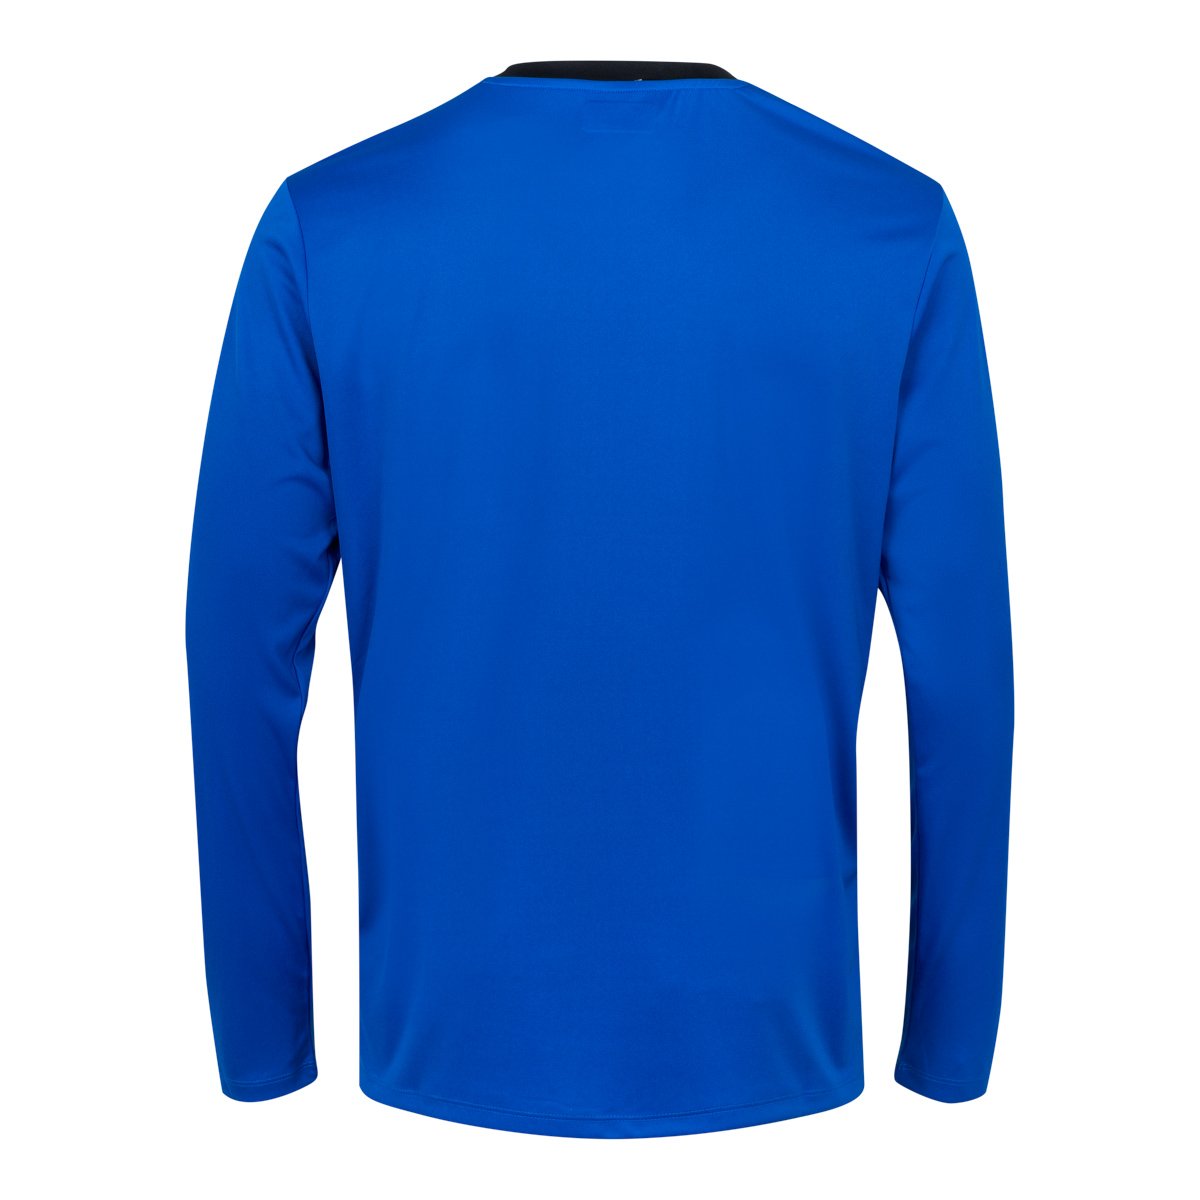 Camiseta de juego Fútbol Caserne Azul Hombre - Imagen 2